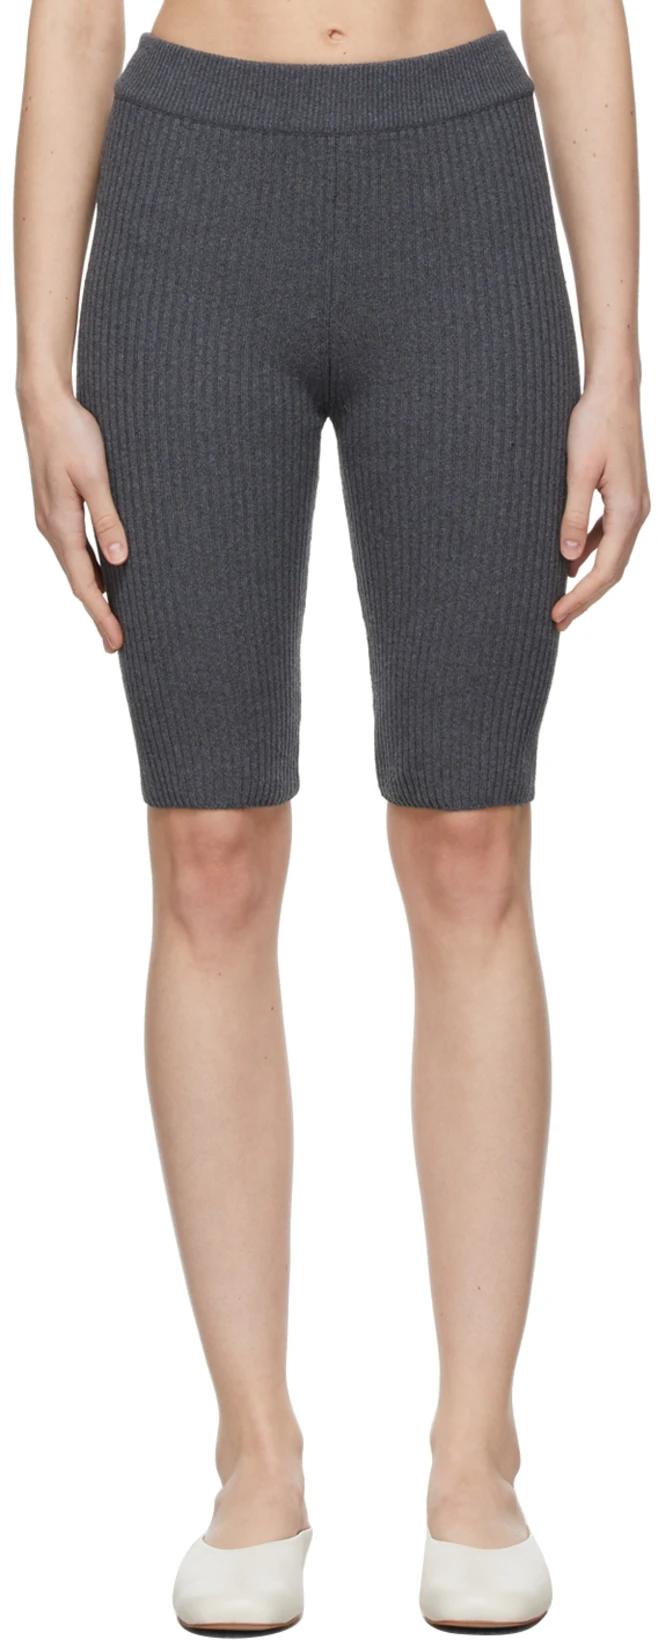 Grey Ribbed Shorts by CORDERA